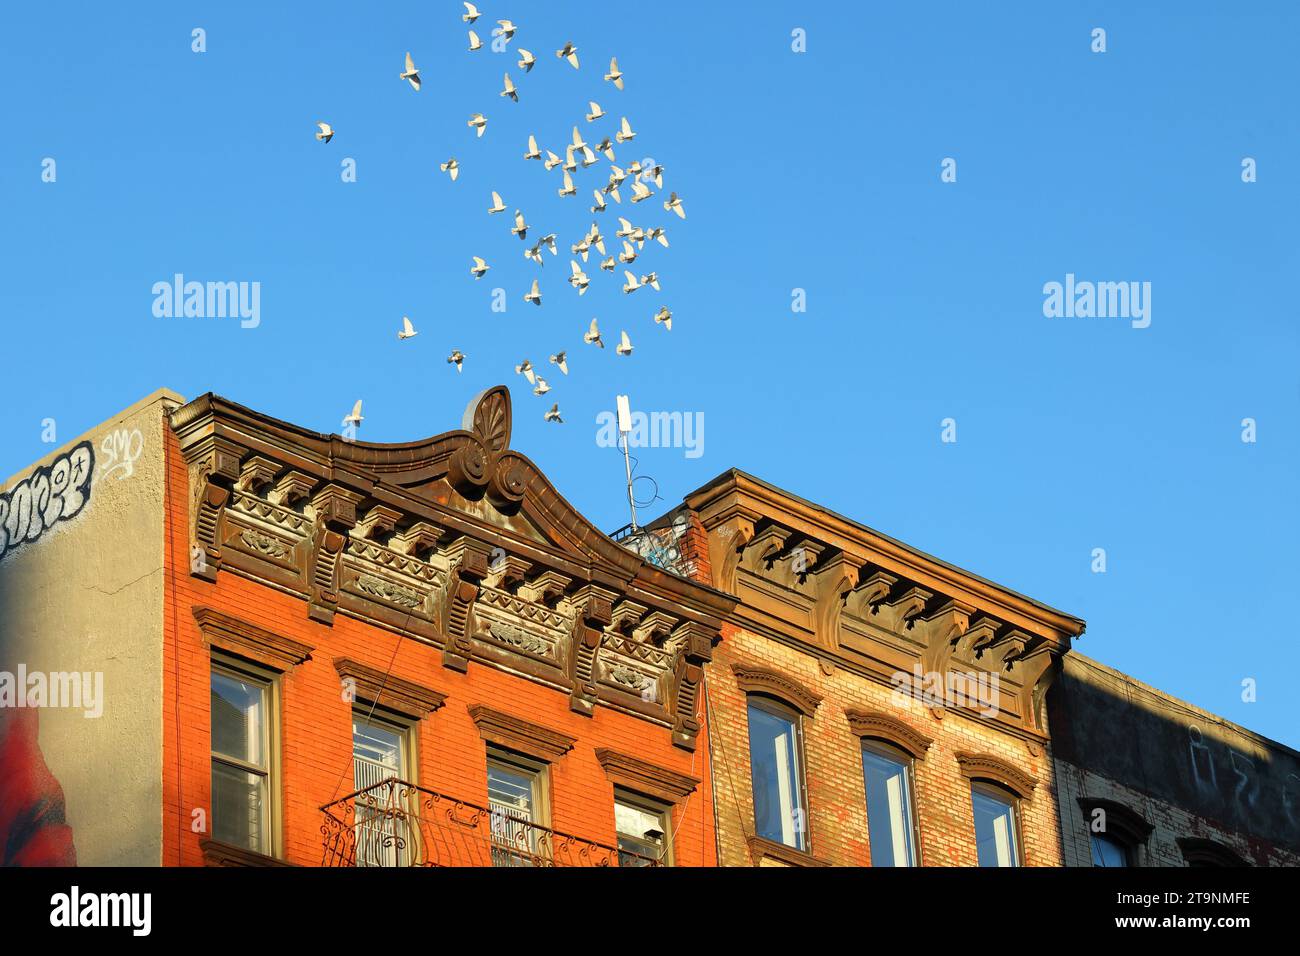 Un gregge di piccioni si aggira sugli edifici di proprietà di New York City in un hobby e sport chiamato piccione sussurrare Foto Stock